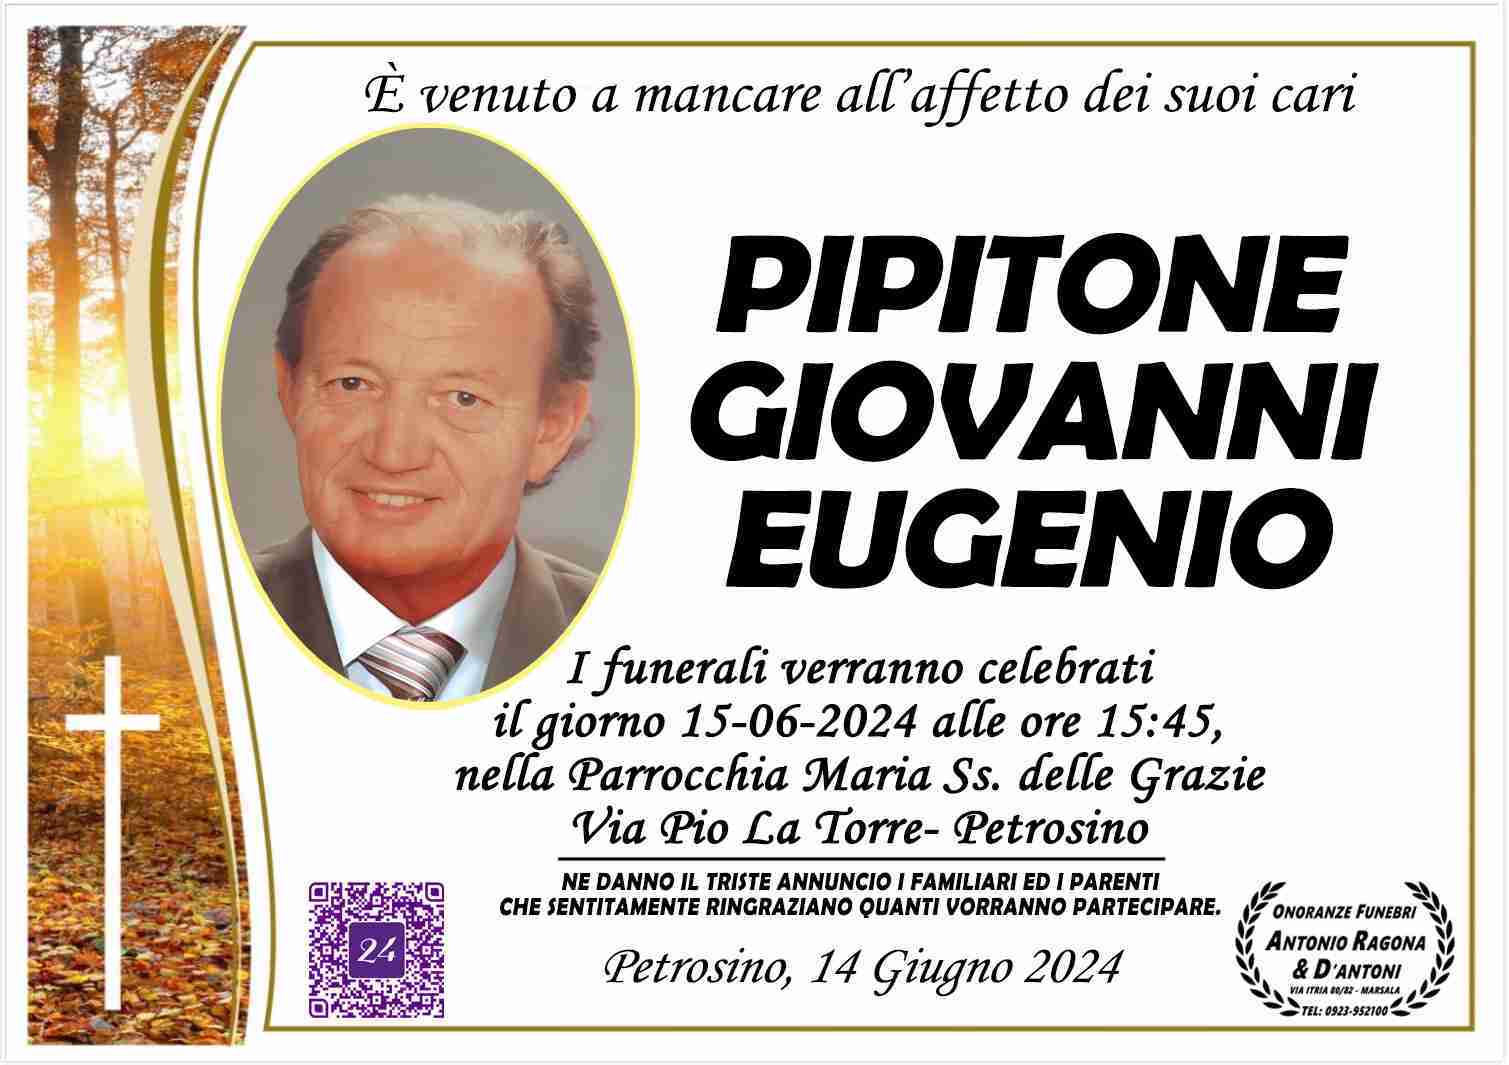 Giovanni Eugenio Pipitone